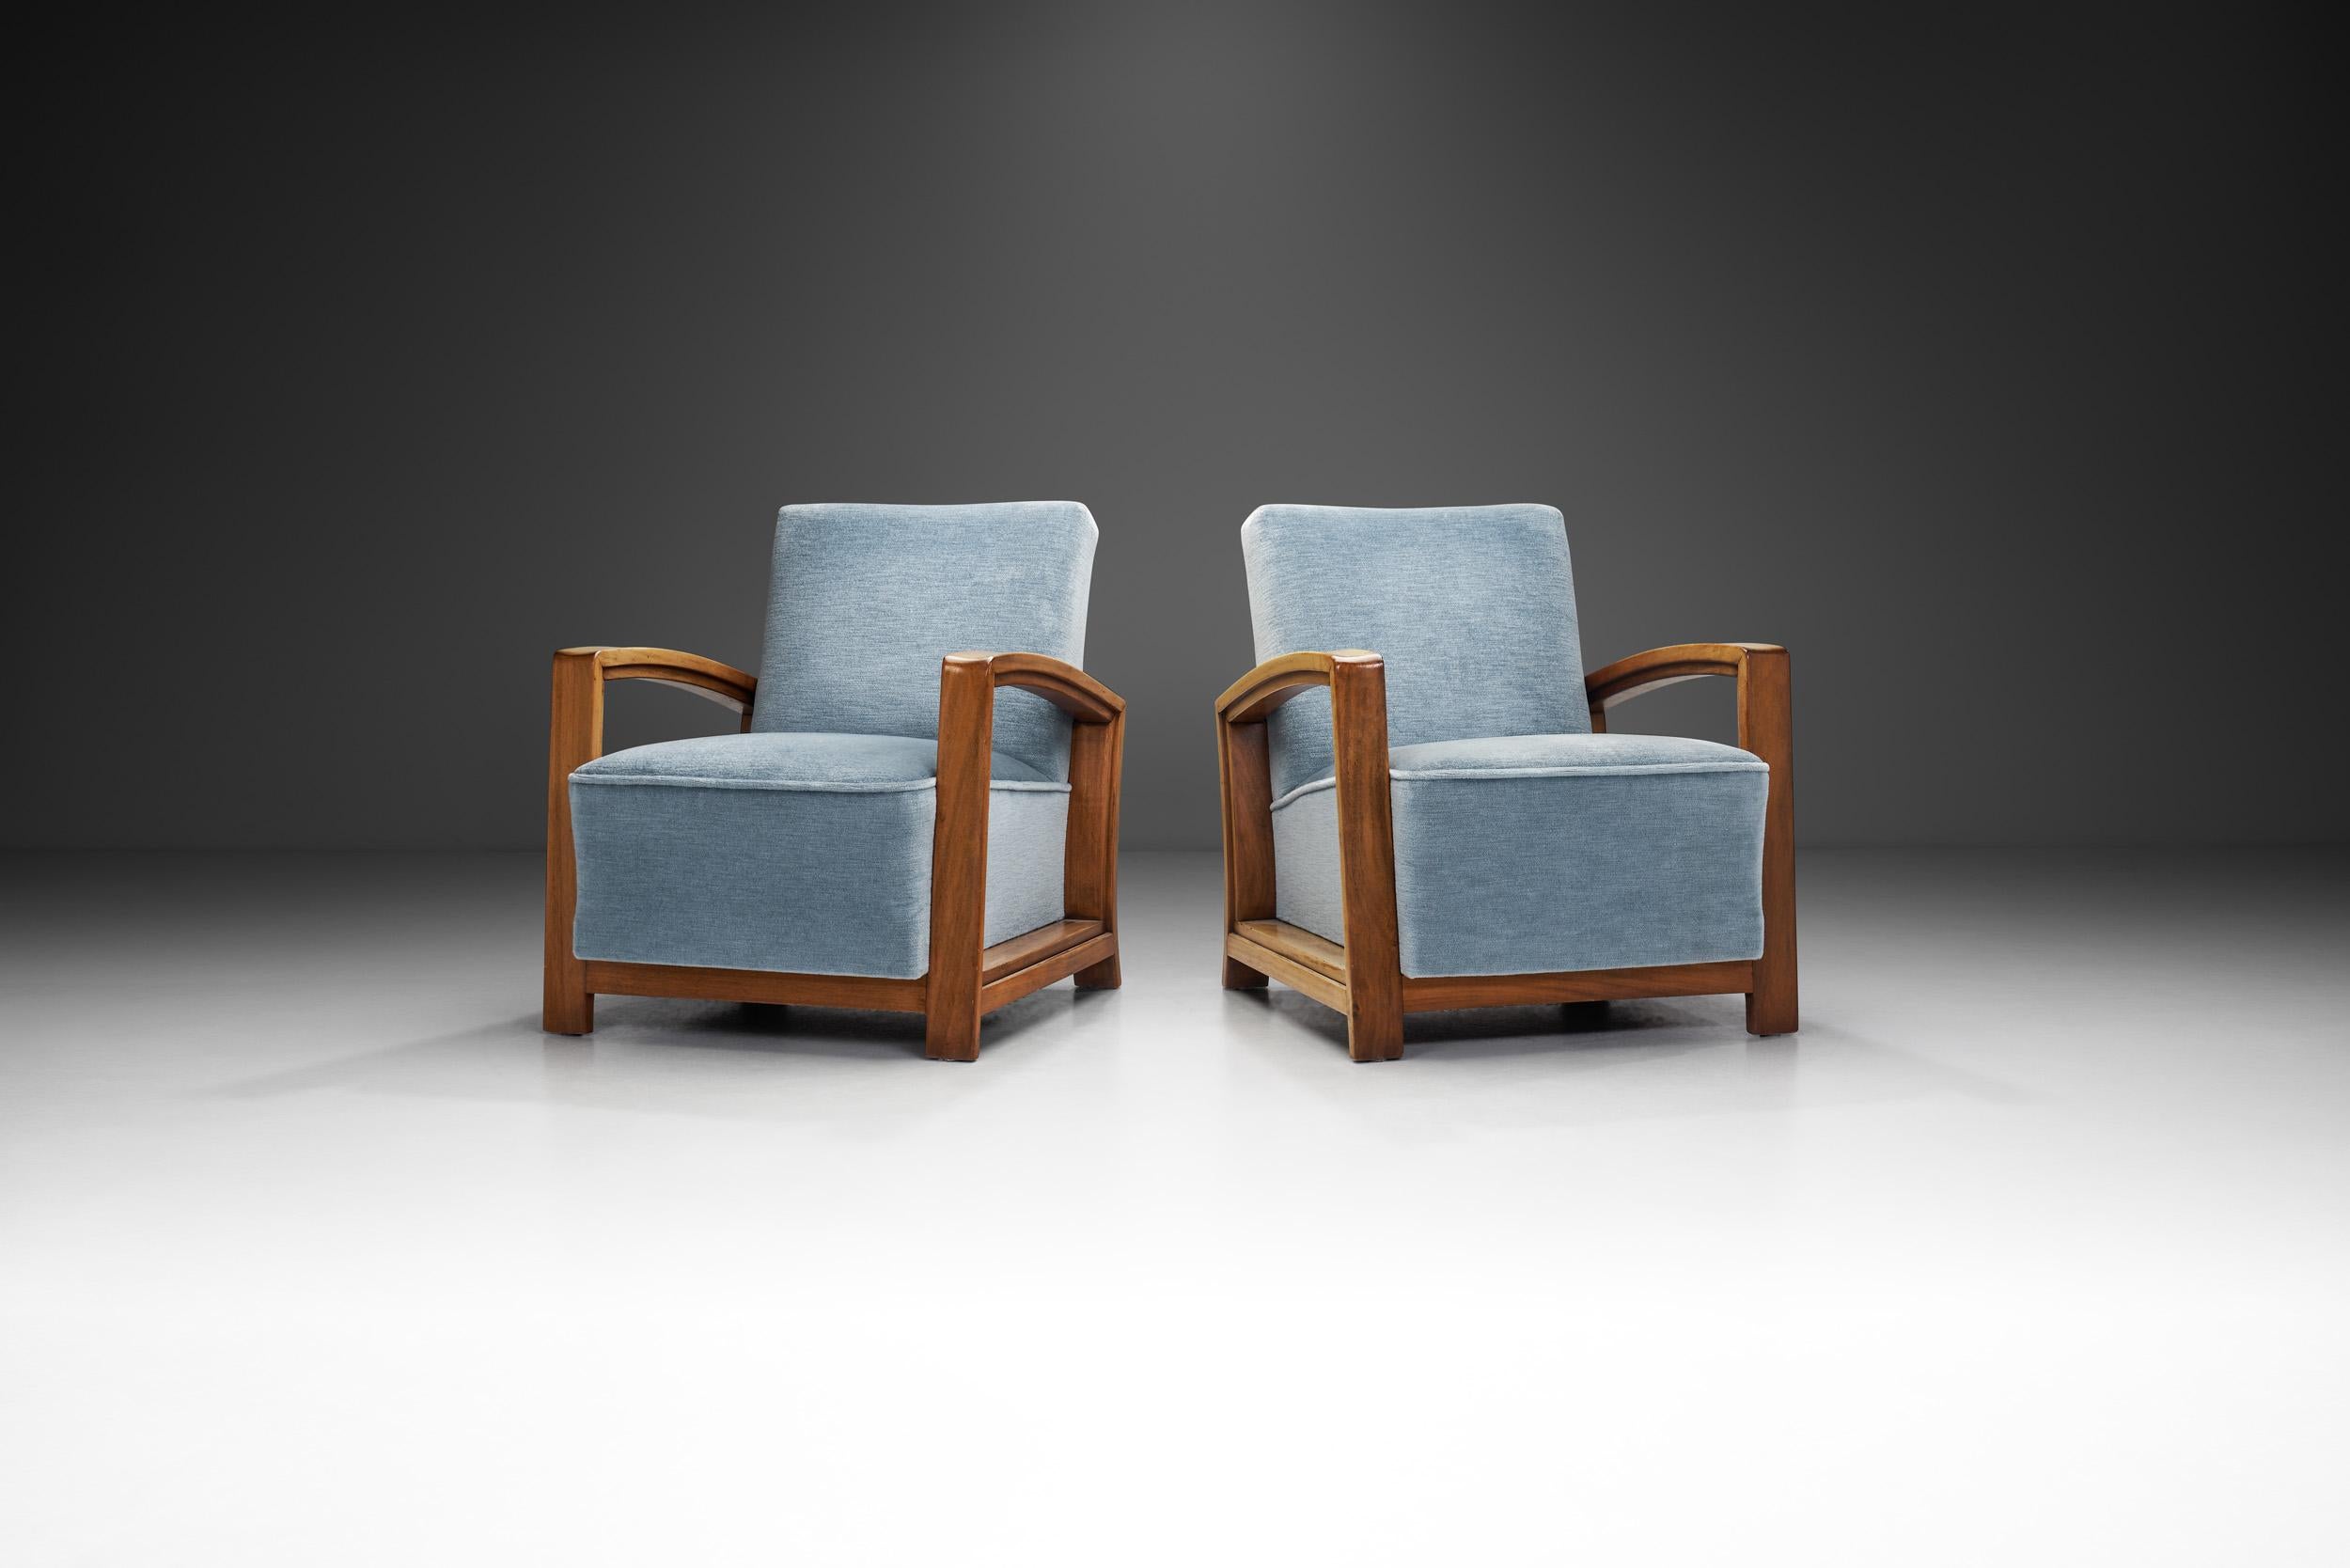 Im Herzen der holländischen Designinnovation der 1930er Jahre entstanden diese exquisiten Verkörperungen der Verschmelzung von holländischer Moderne und opulentem Art-déco-Stil. Diese kantigen, geschichtsträchtigen Sessel vereinen Form und Funktion